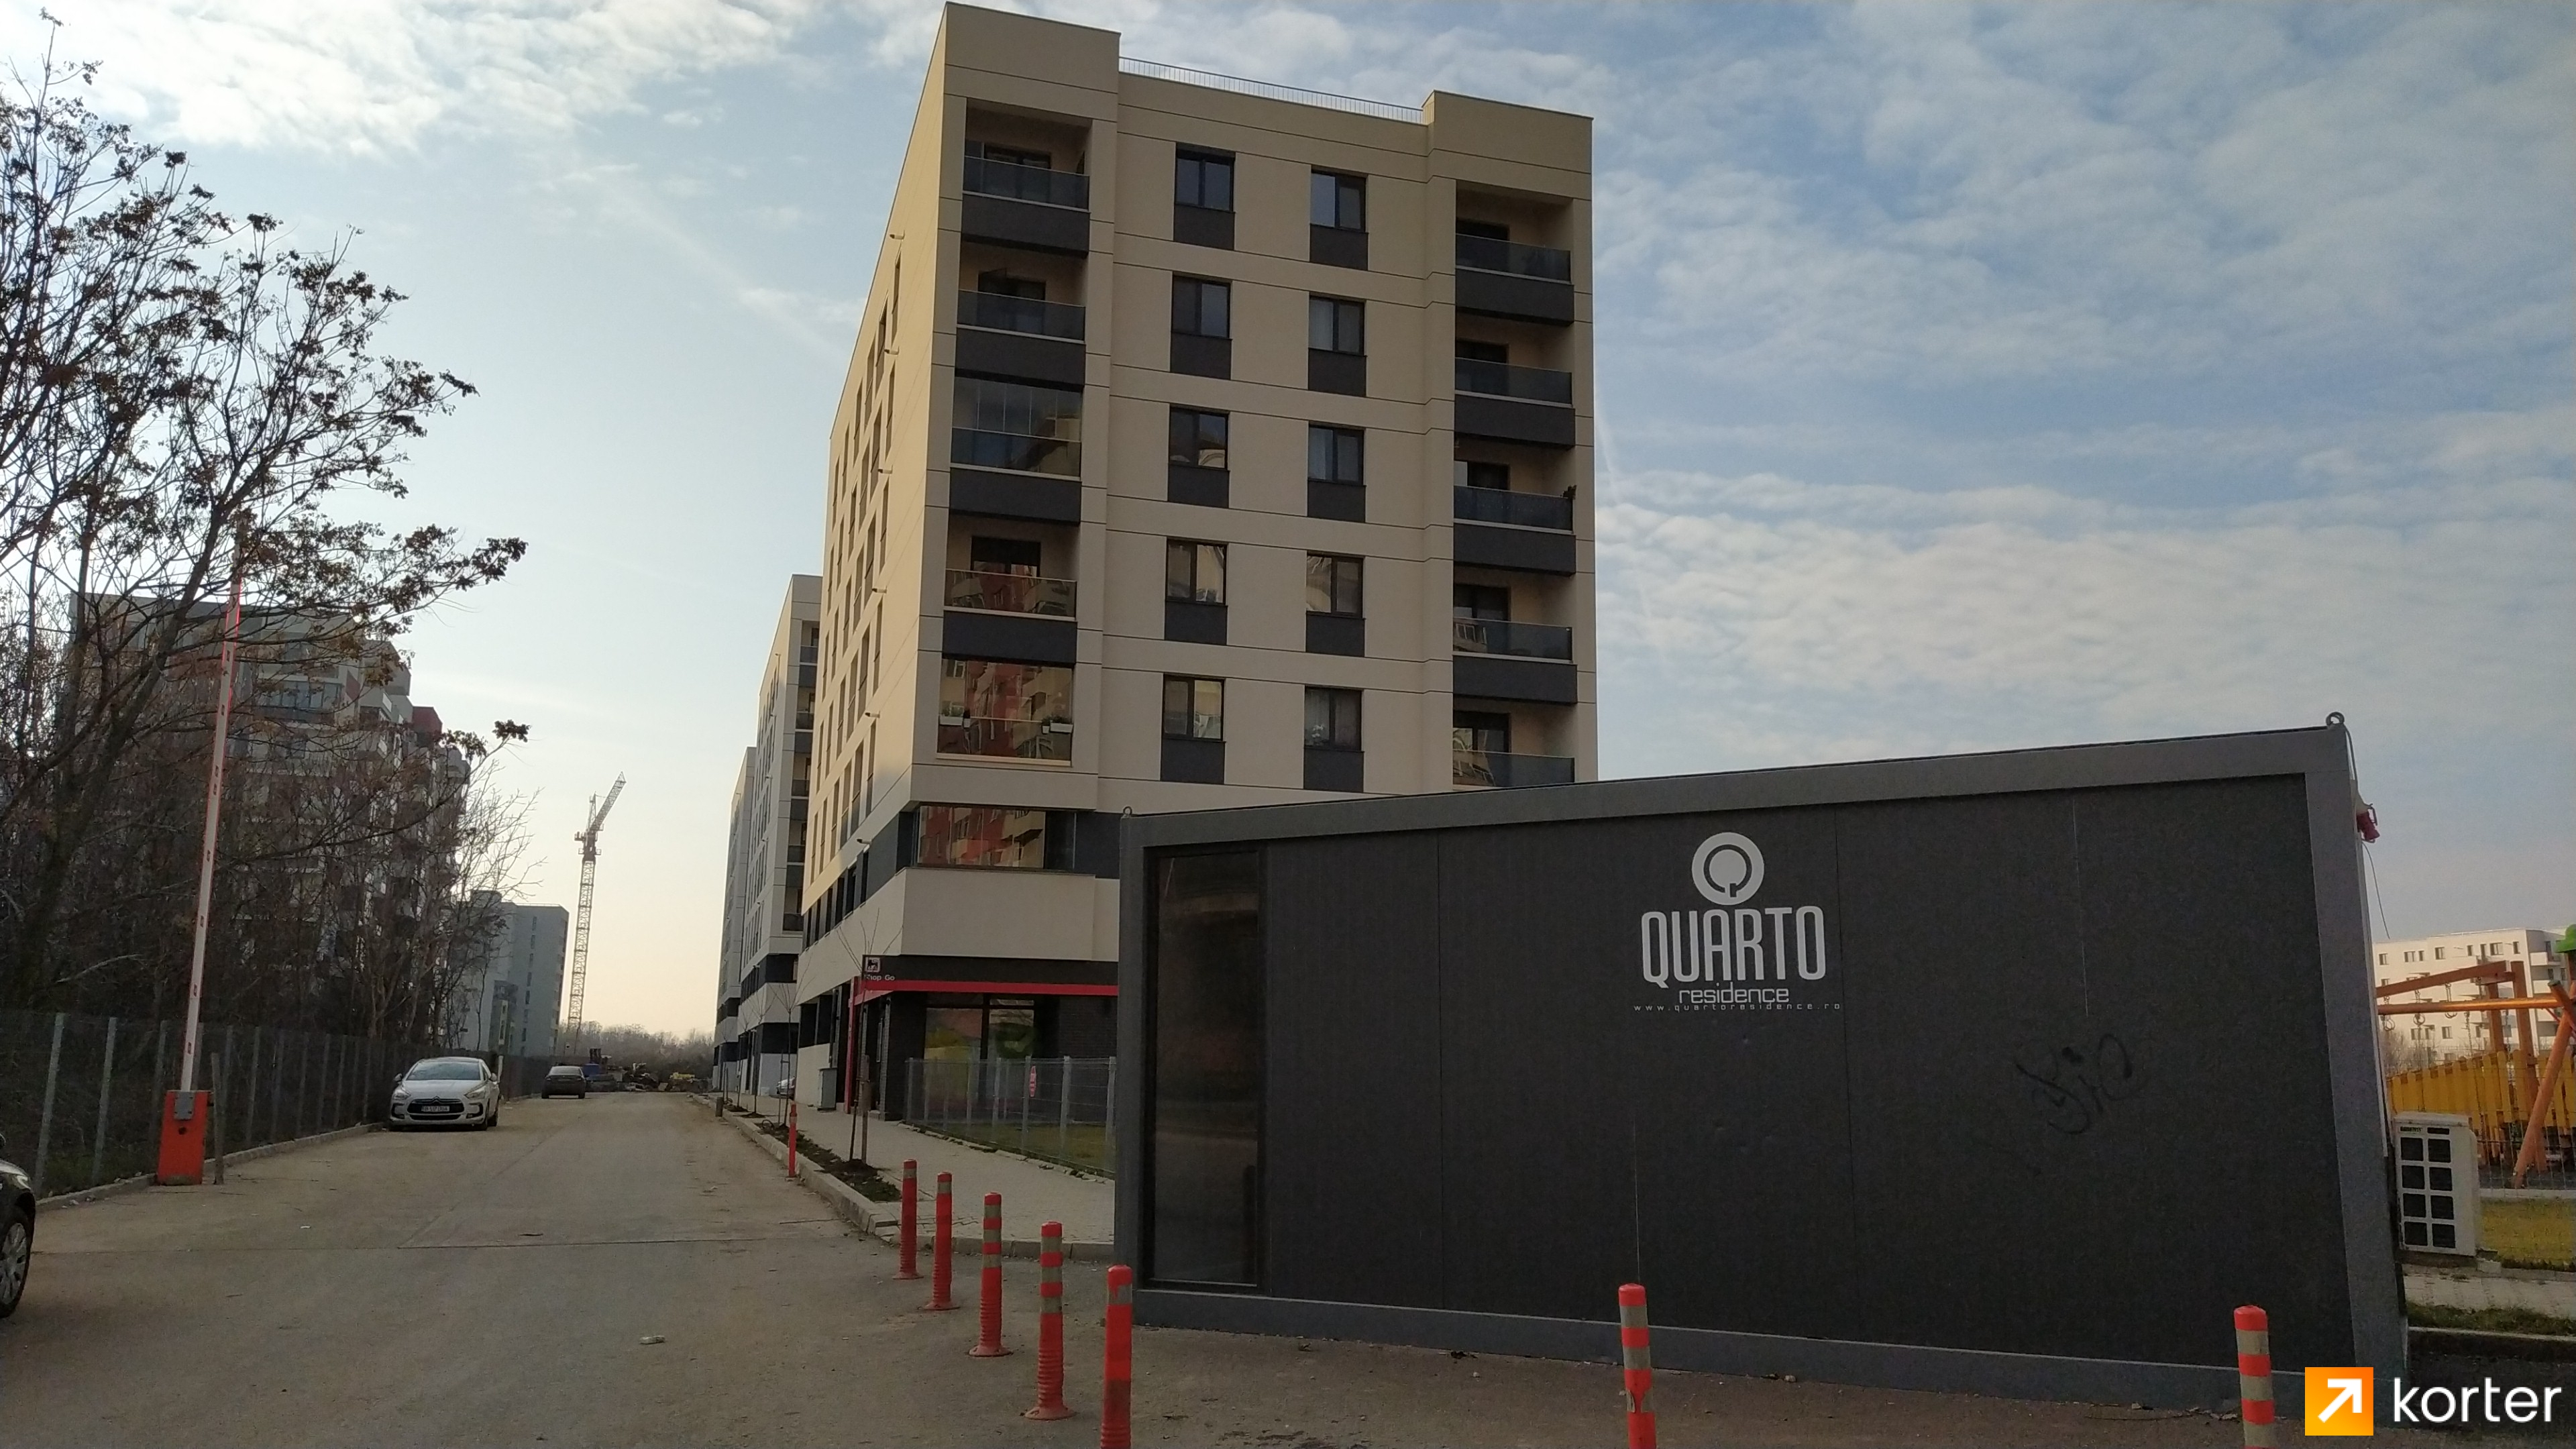 Evoluția construcției Complexului Quarto Residence - Punct 6, Ianuarie 2020